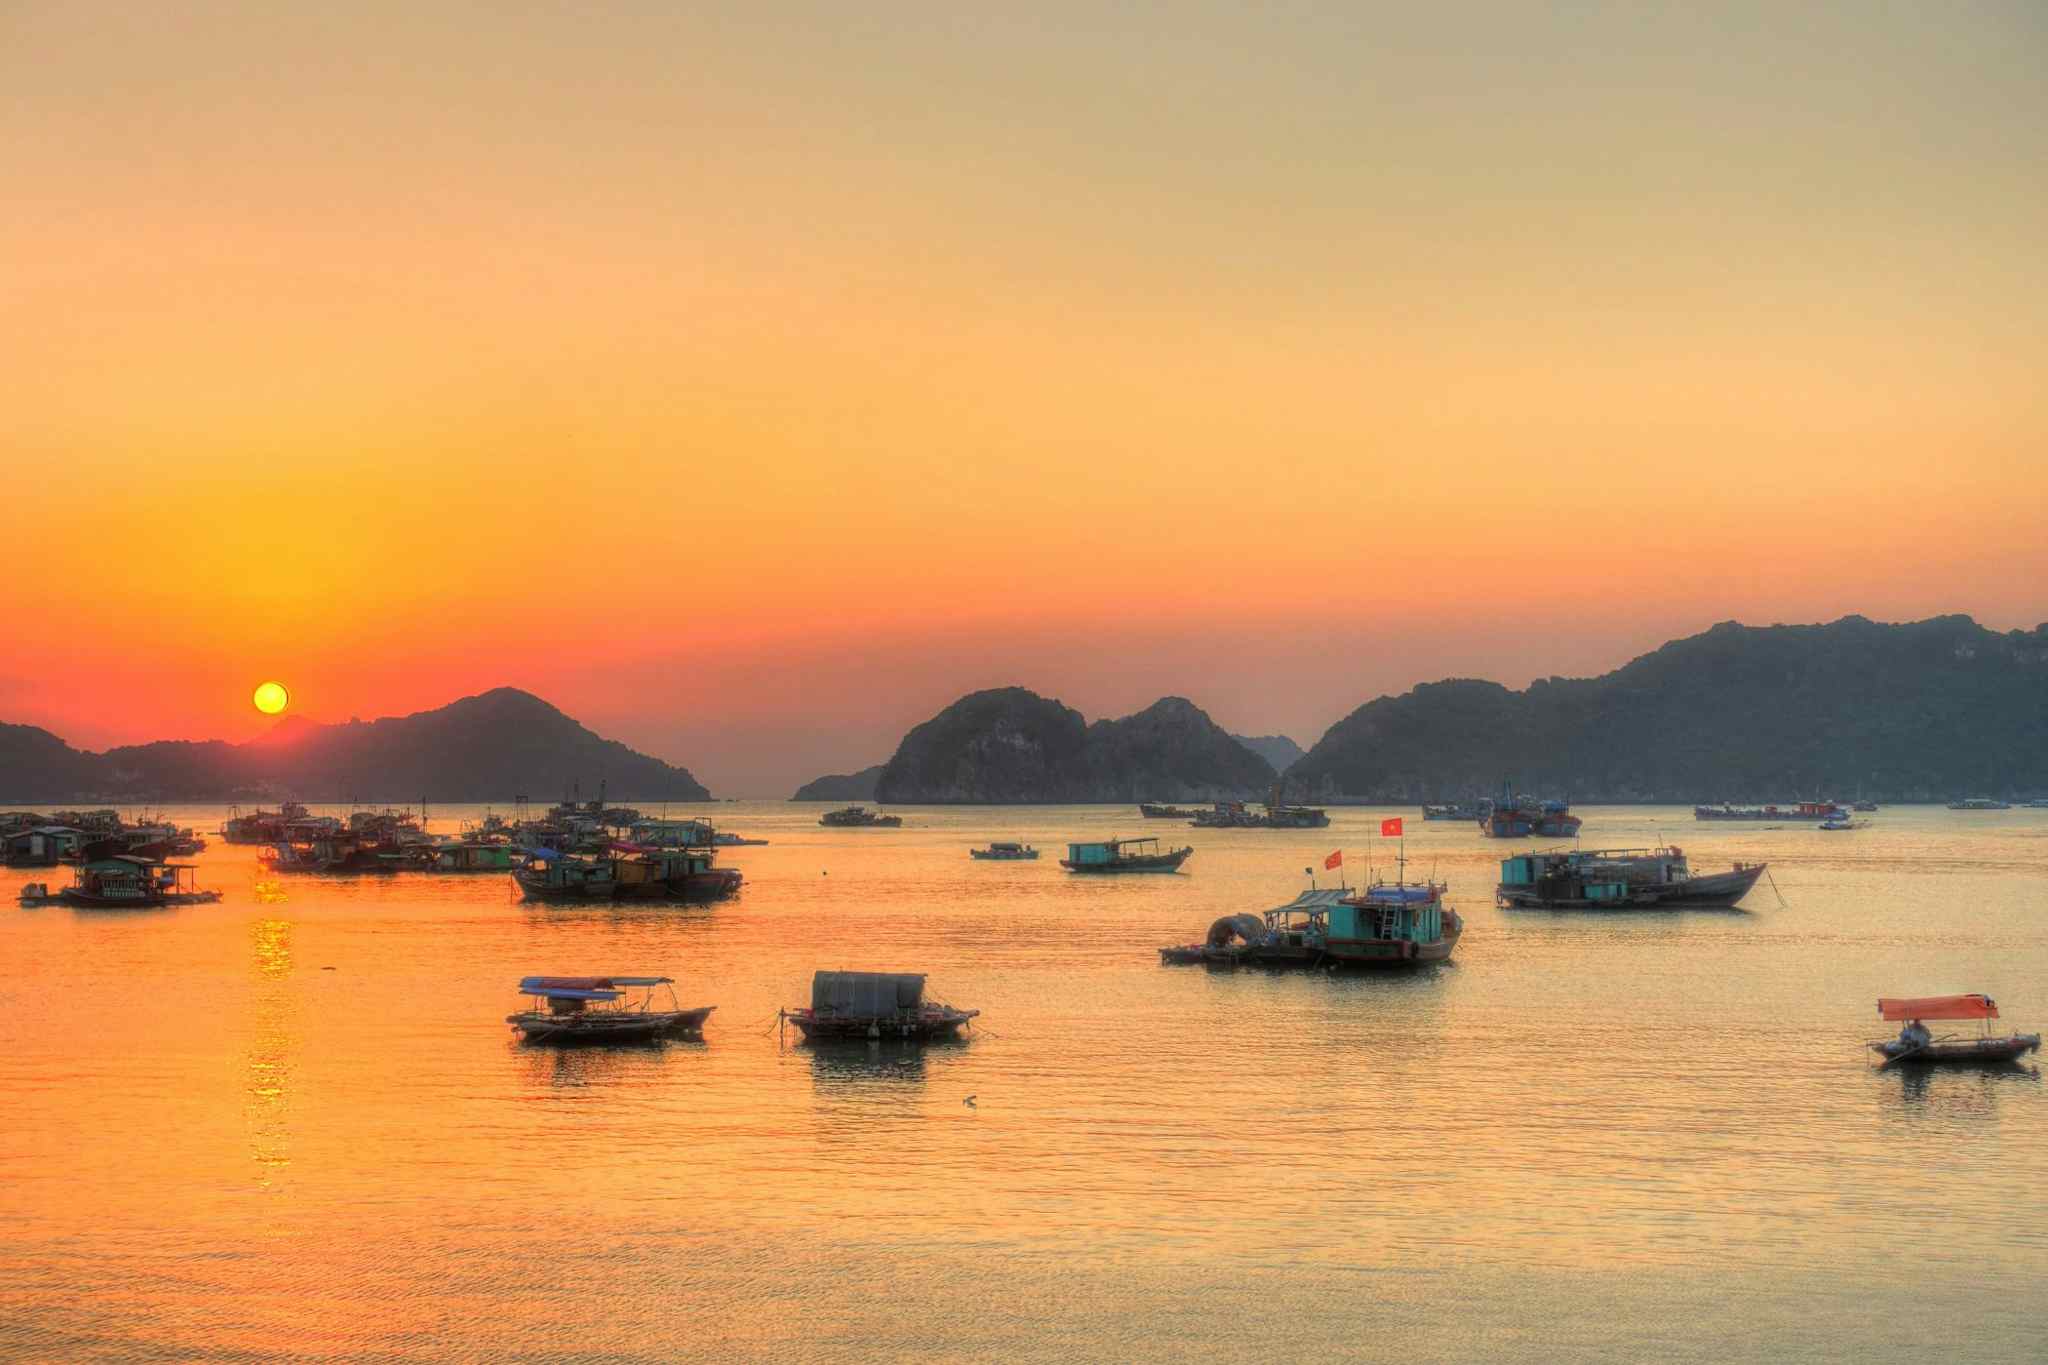 CANVA - Sunset over Cat Ba Island in Vietnam. Photo: Canva link: https://www.canva.com/photos/MADmgOkFmd4-cat-ba-island-vietnam/
